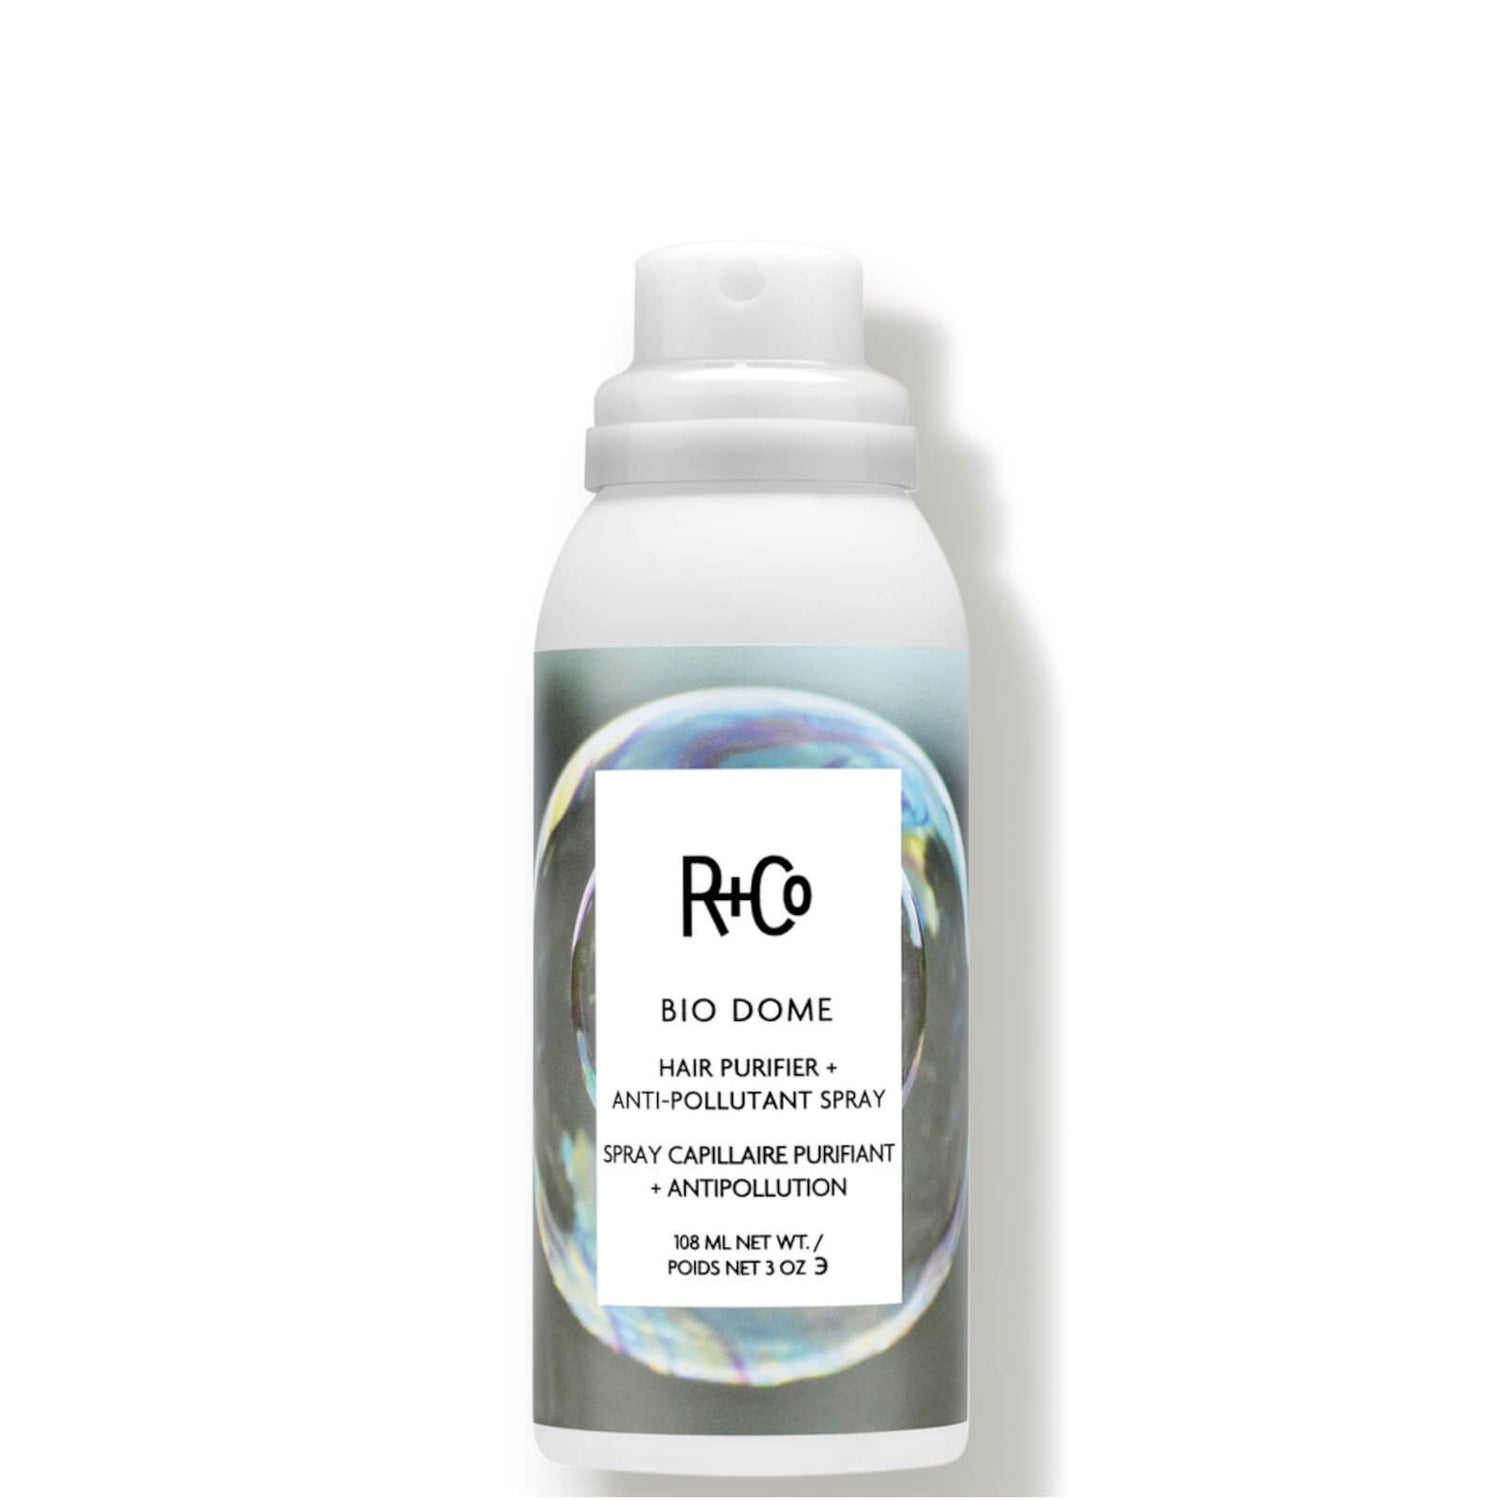 R+Co BIO DOME Hair Purifier Anti-Pollutant Spray 3 oz.